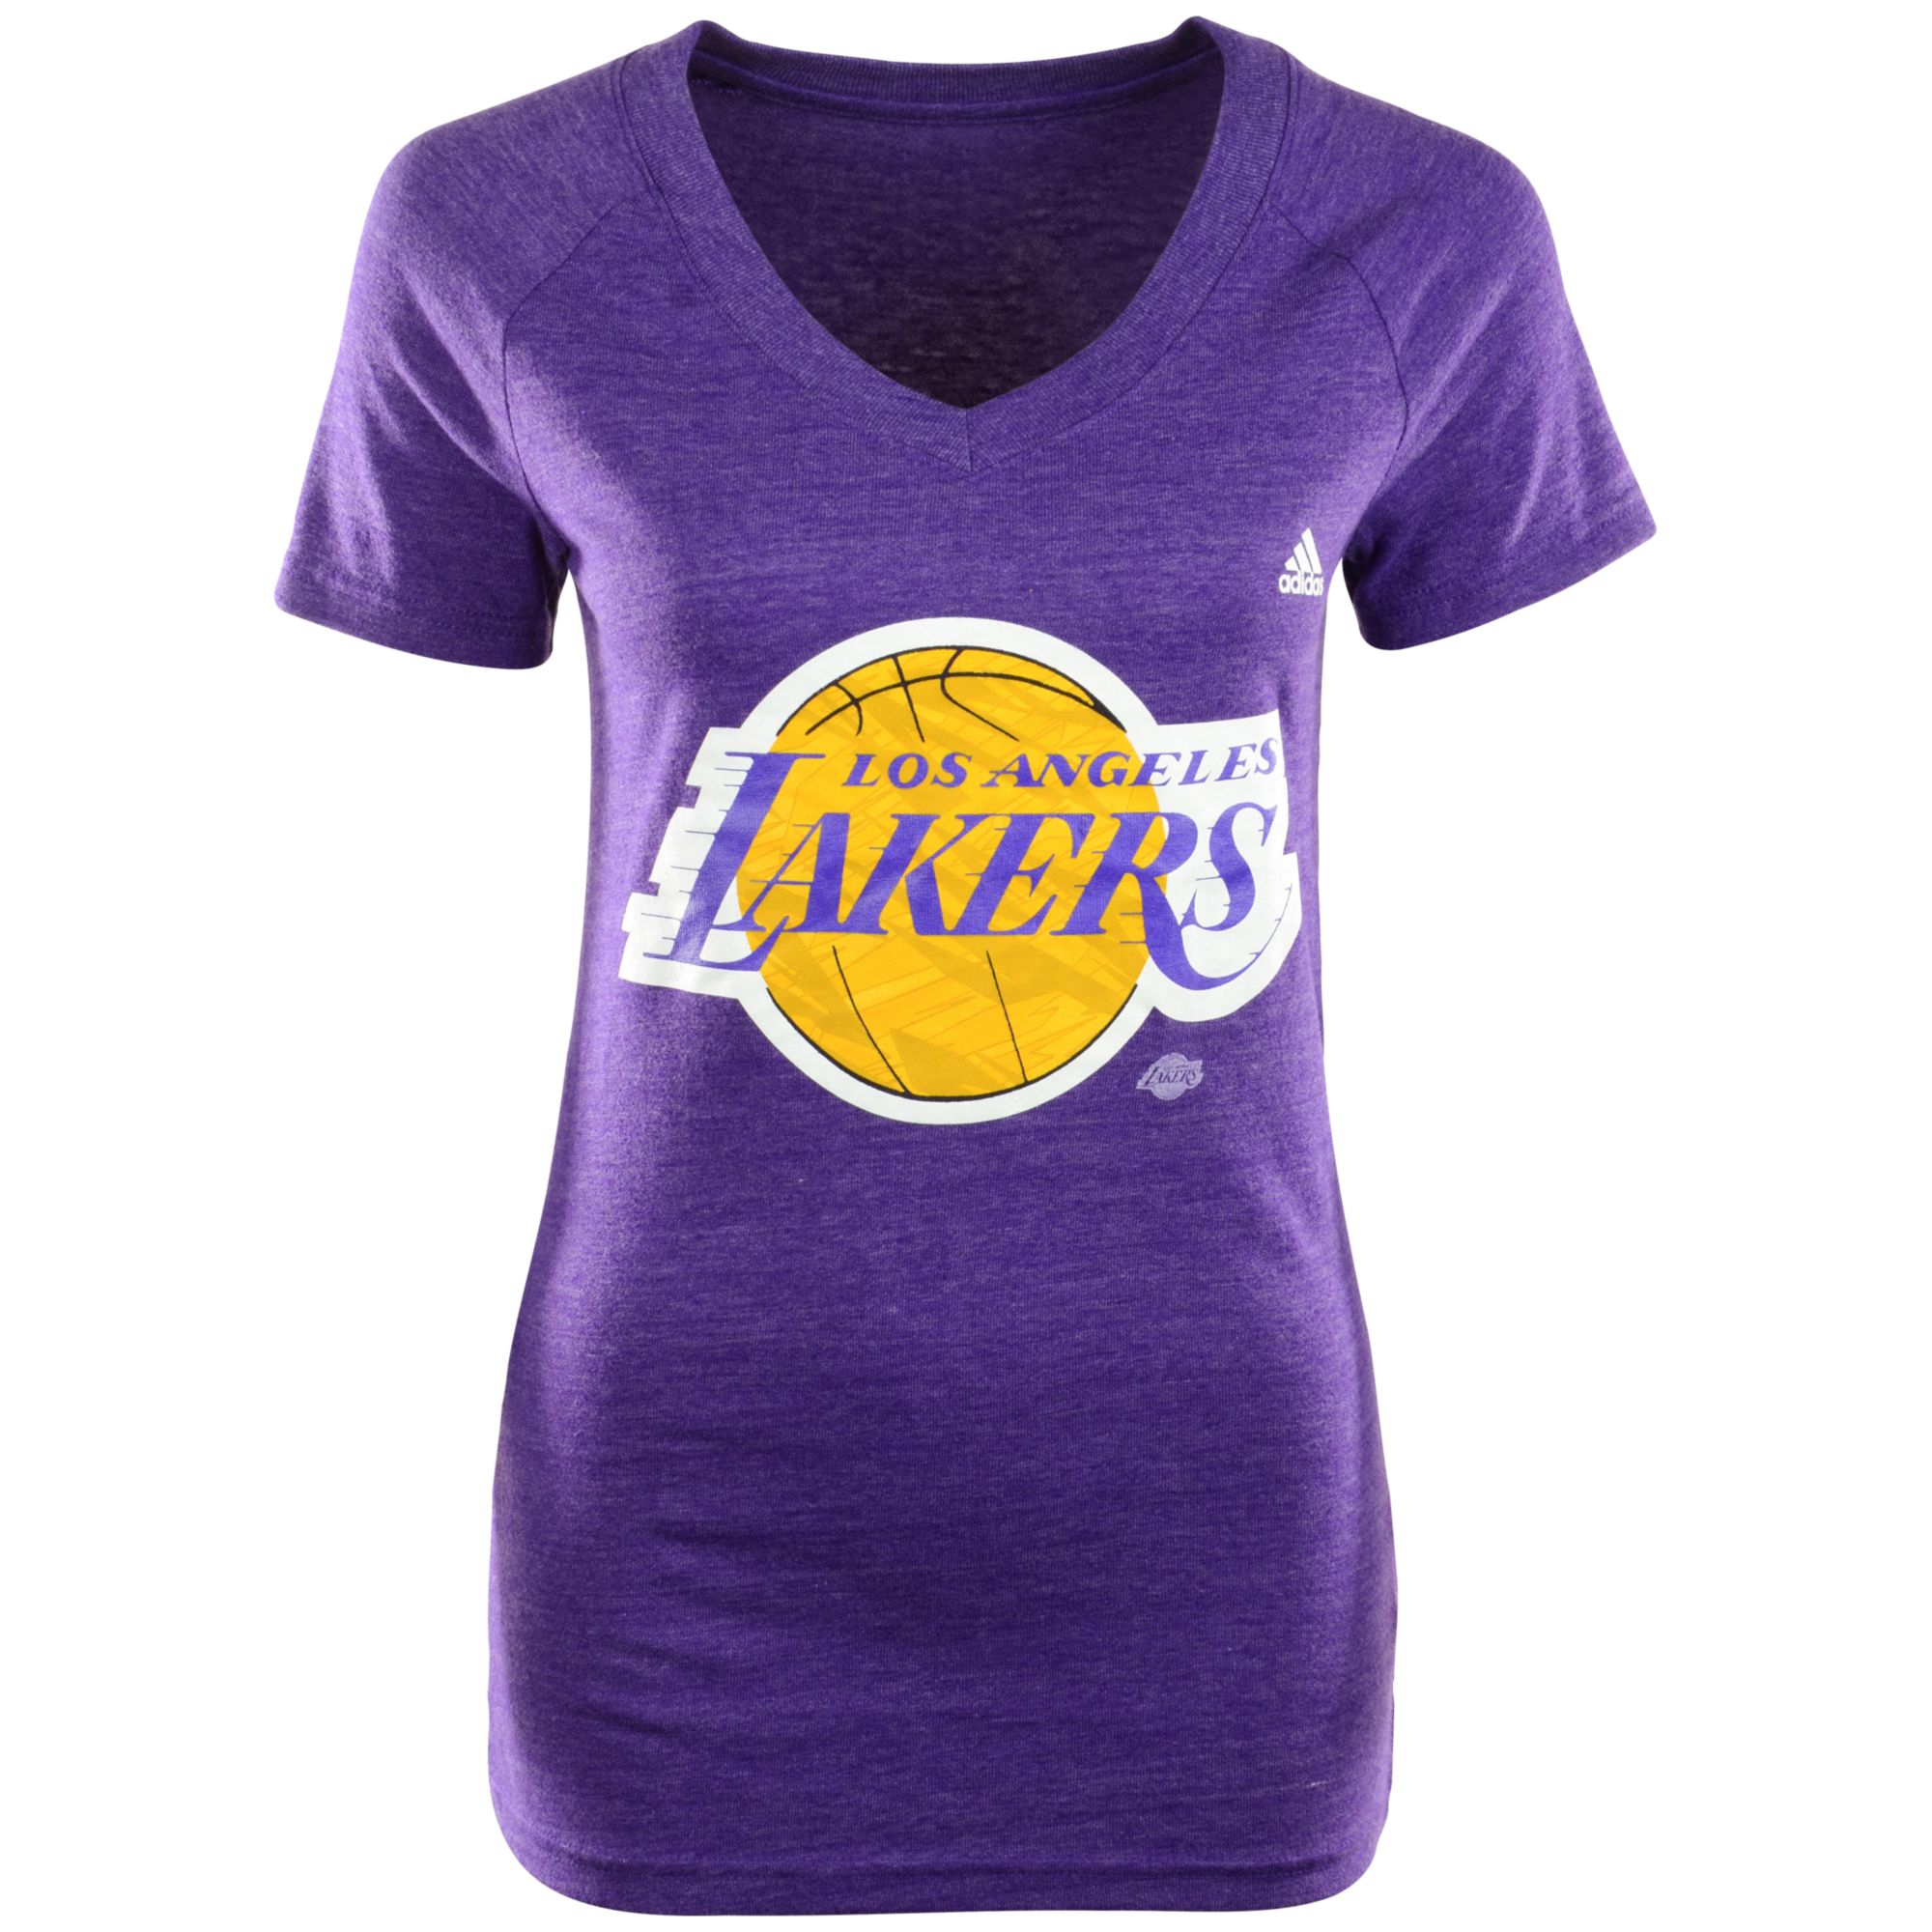 Adidas Womens Shortsleeve Los Angeles Lakers Vneck Tshirt in Purple | Lyst